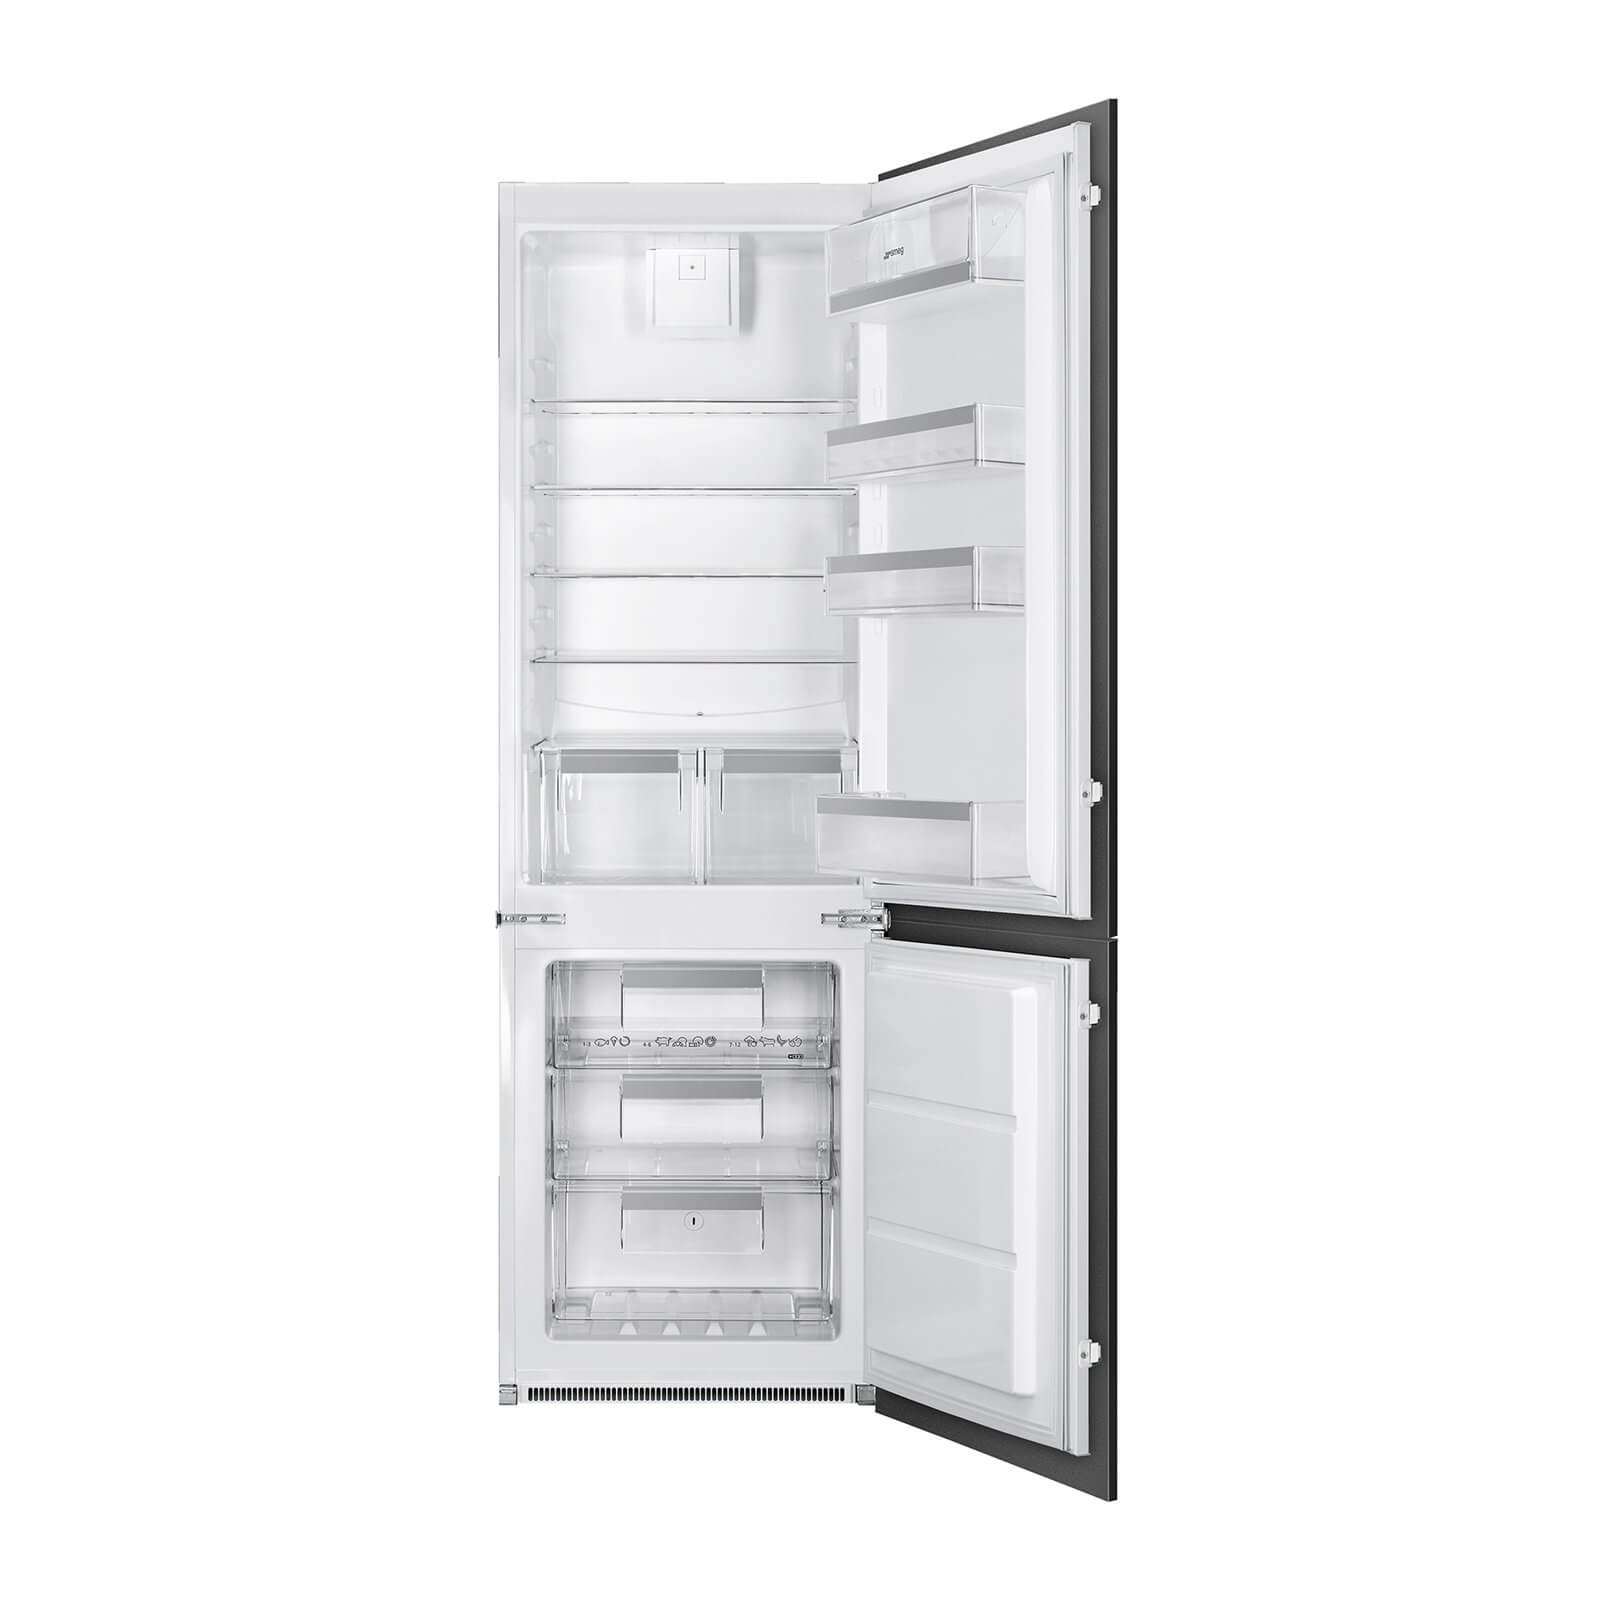 Smeg UKC7280NEP1 Integrated Fridge Freezer - White